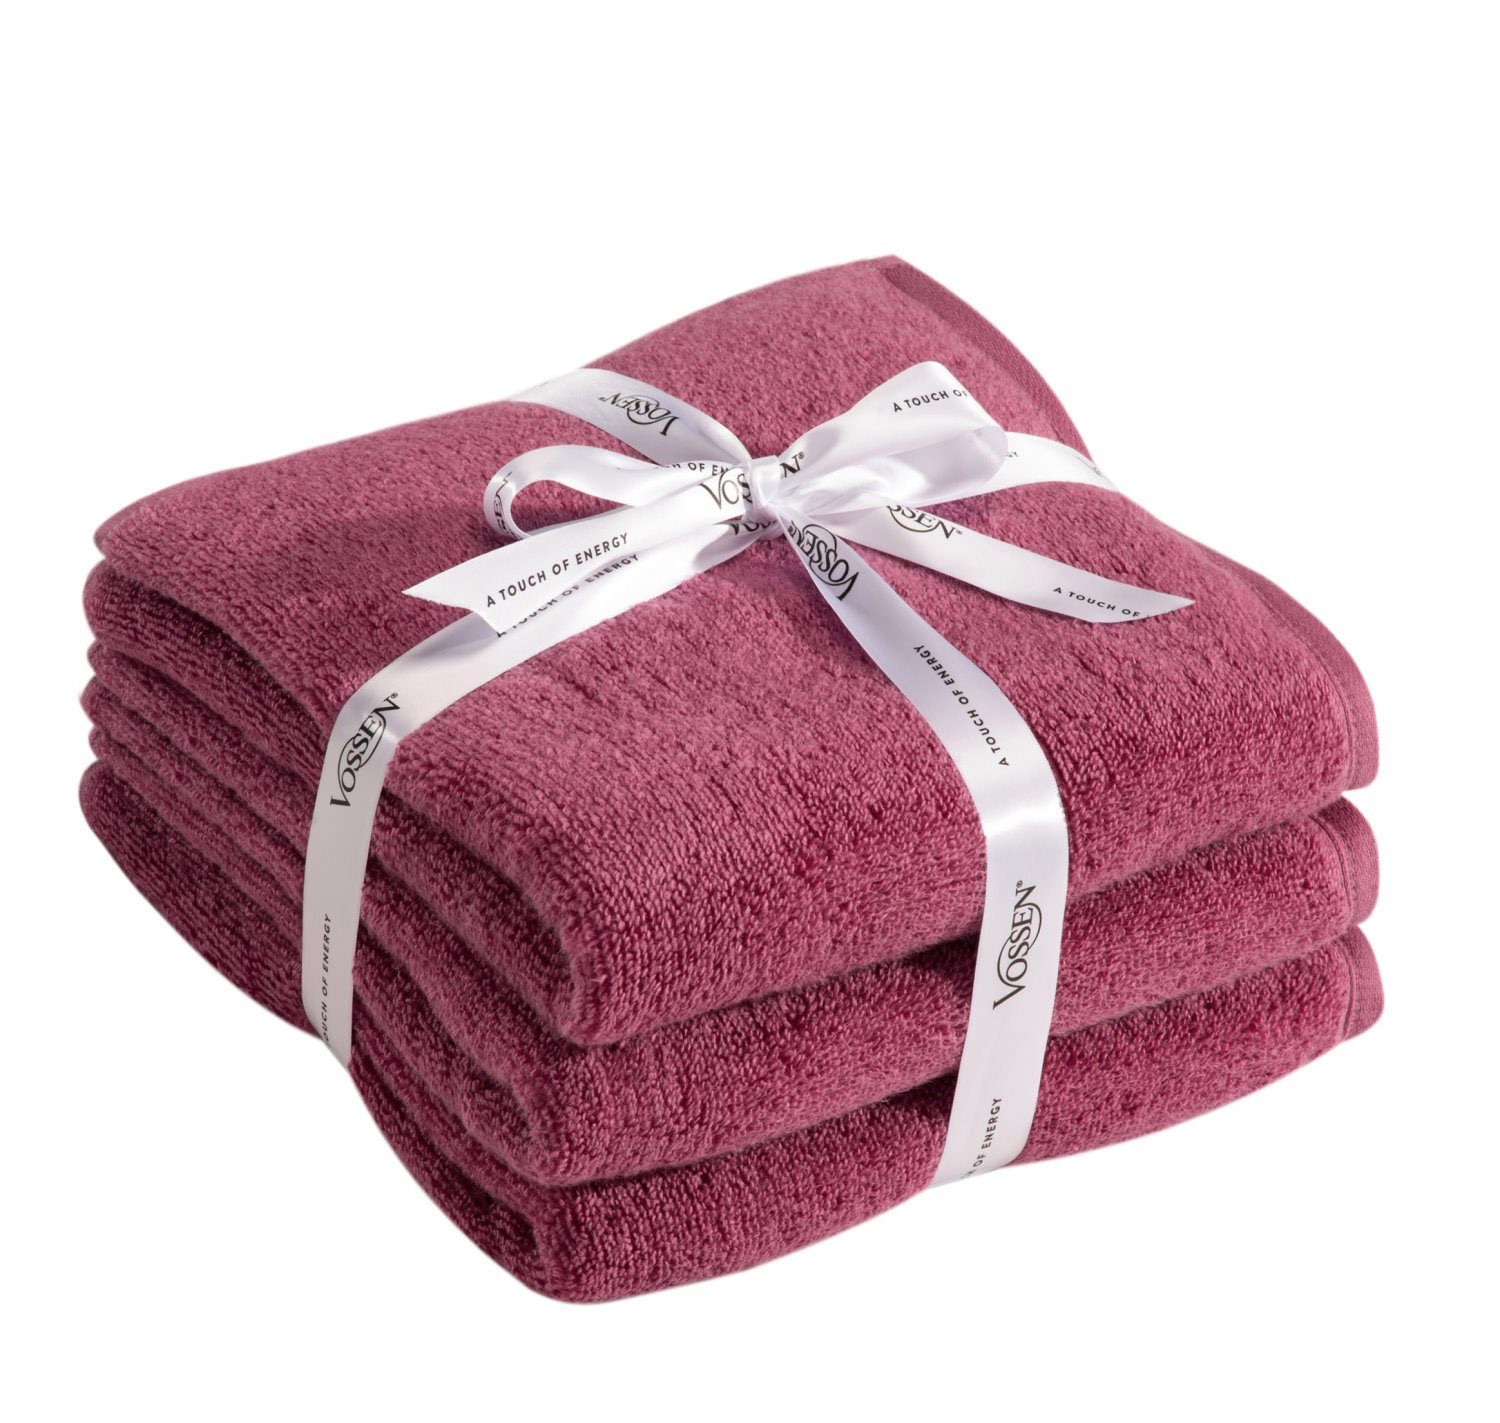 Vossen Handtuchset Duschtuch Handtuch oder Gästetuch skyline 